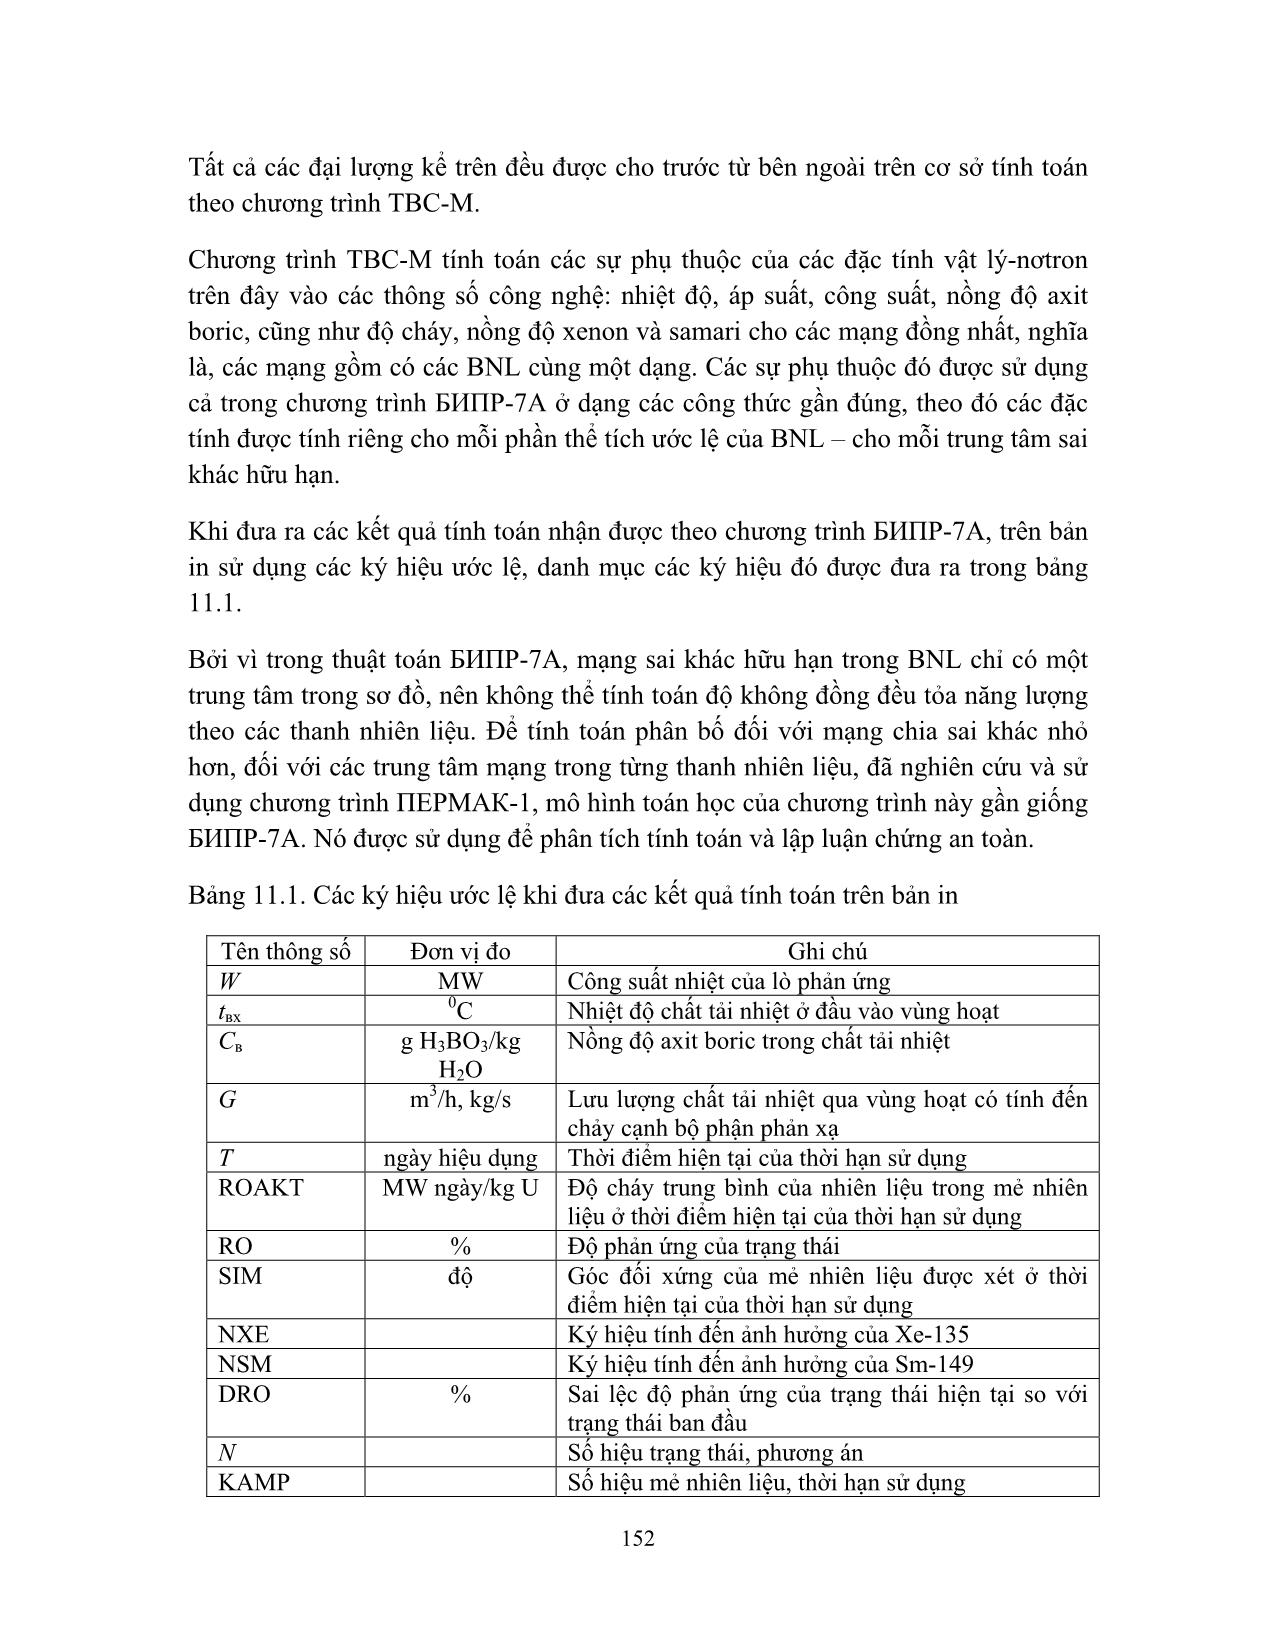 Vật lý lò phản ứng dùng cho nhân viên vận hành nhà máy điện hạt nhân (Phần 2) trang 5